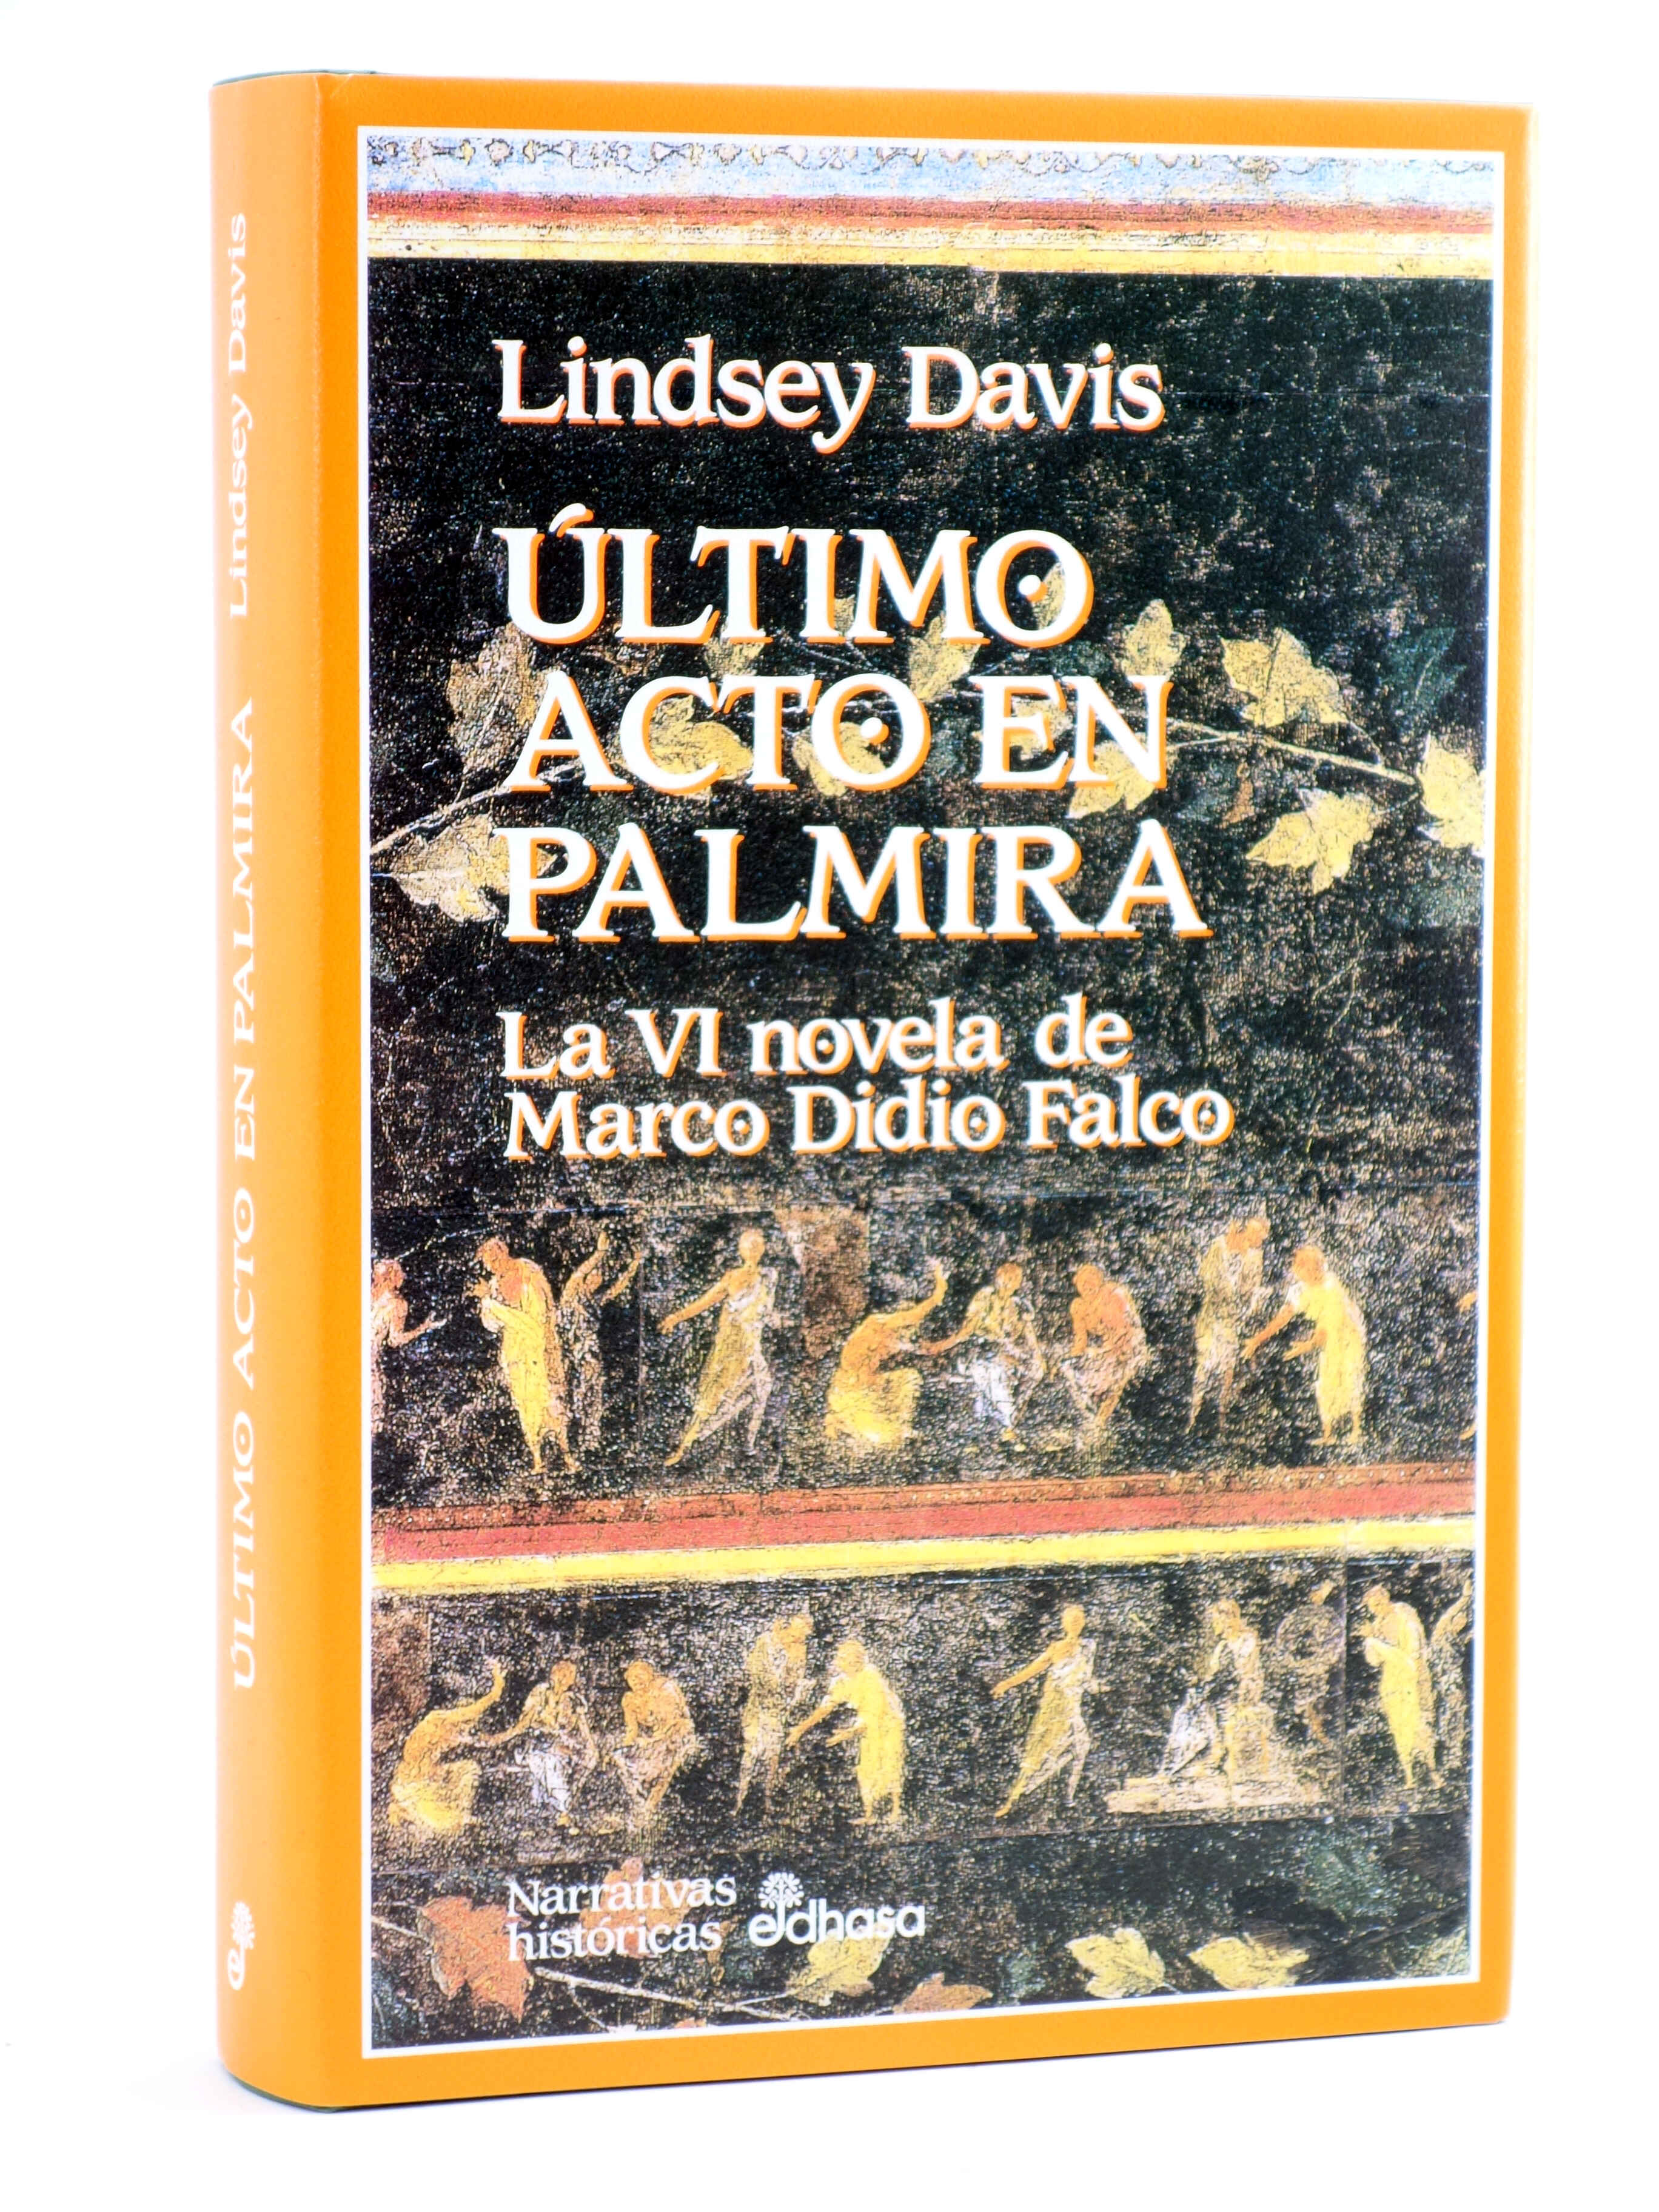 MARCO DIDIO FALCO 6. ÚLTIMO ACTO EN PALMIRA (Lindsey Davis) Edhasa, 1997. OFRT - Lindsey Davis